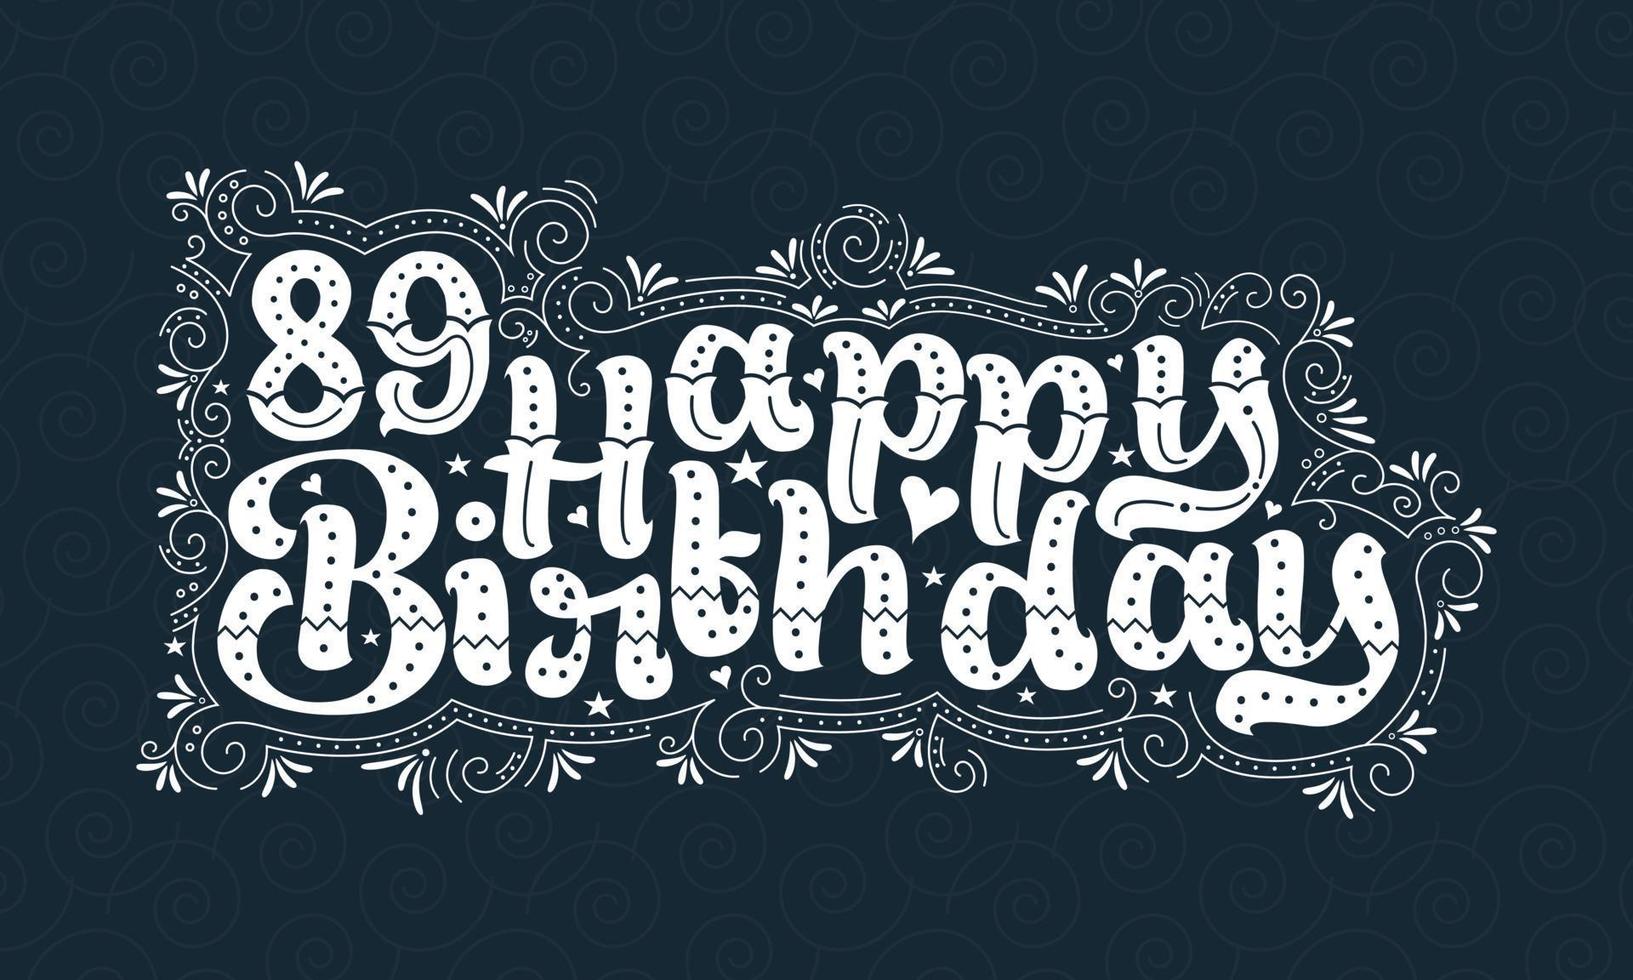 89e joyeux anniversaire lettrage, 89 ans anniversaire belle conception de typographie avec des points, des lignes et des feuilles. vecteur